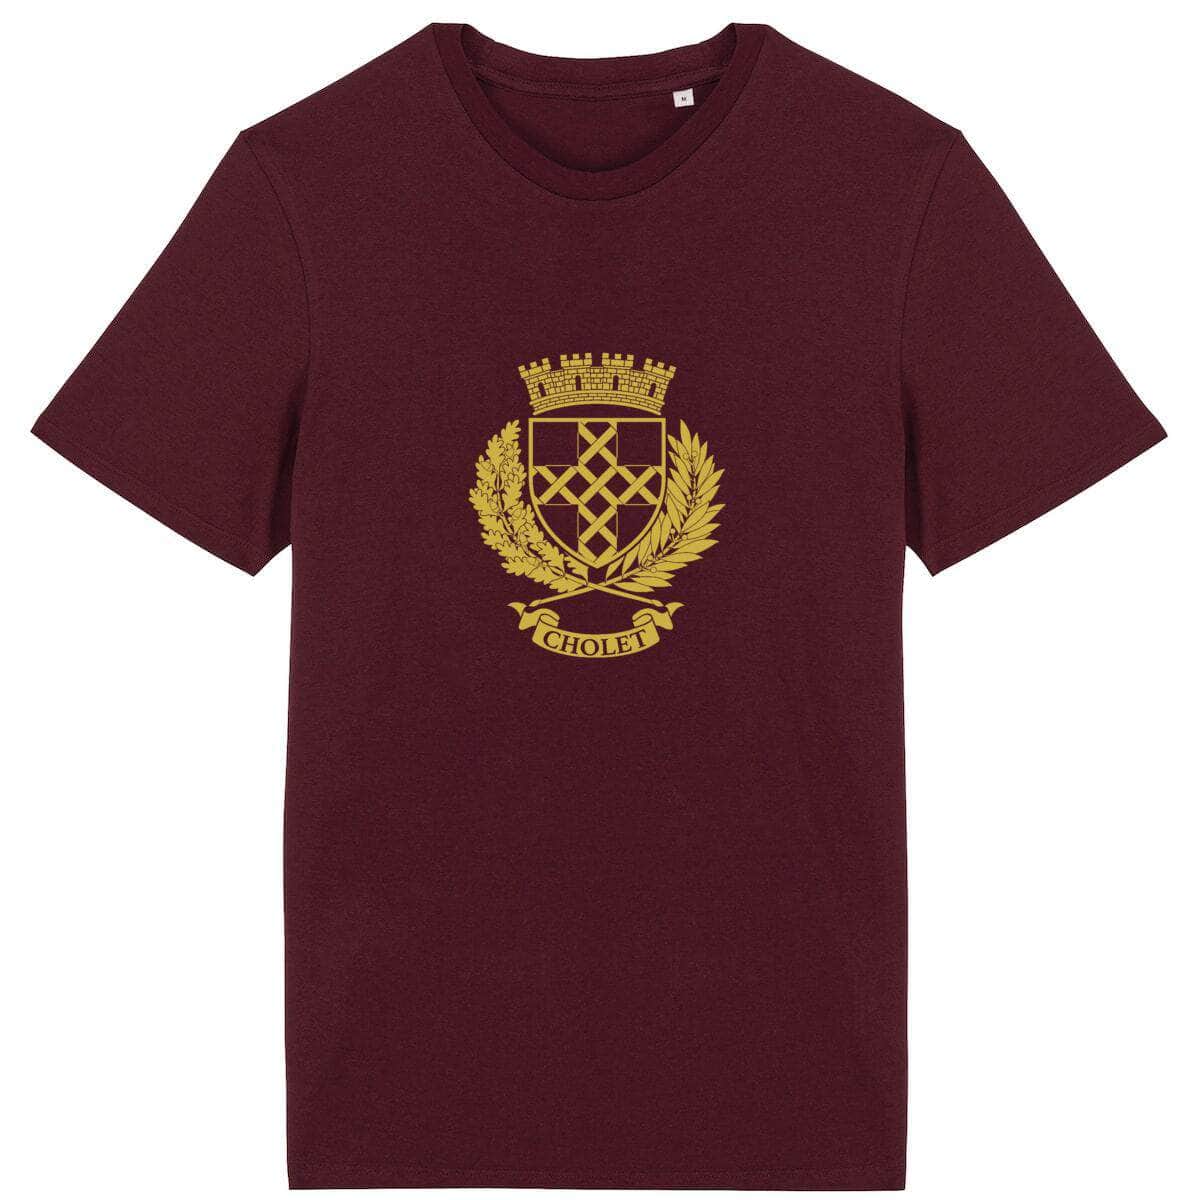 T-shirt - Armoiries de Cholet Bordeaux / XS